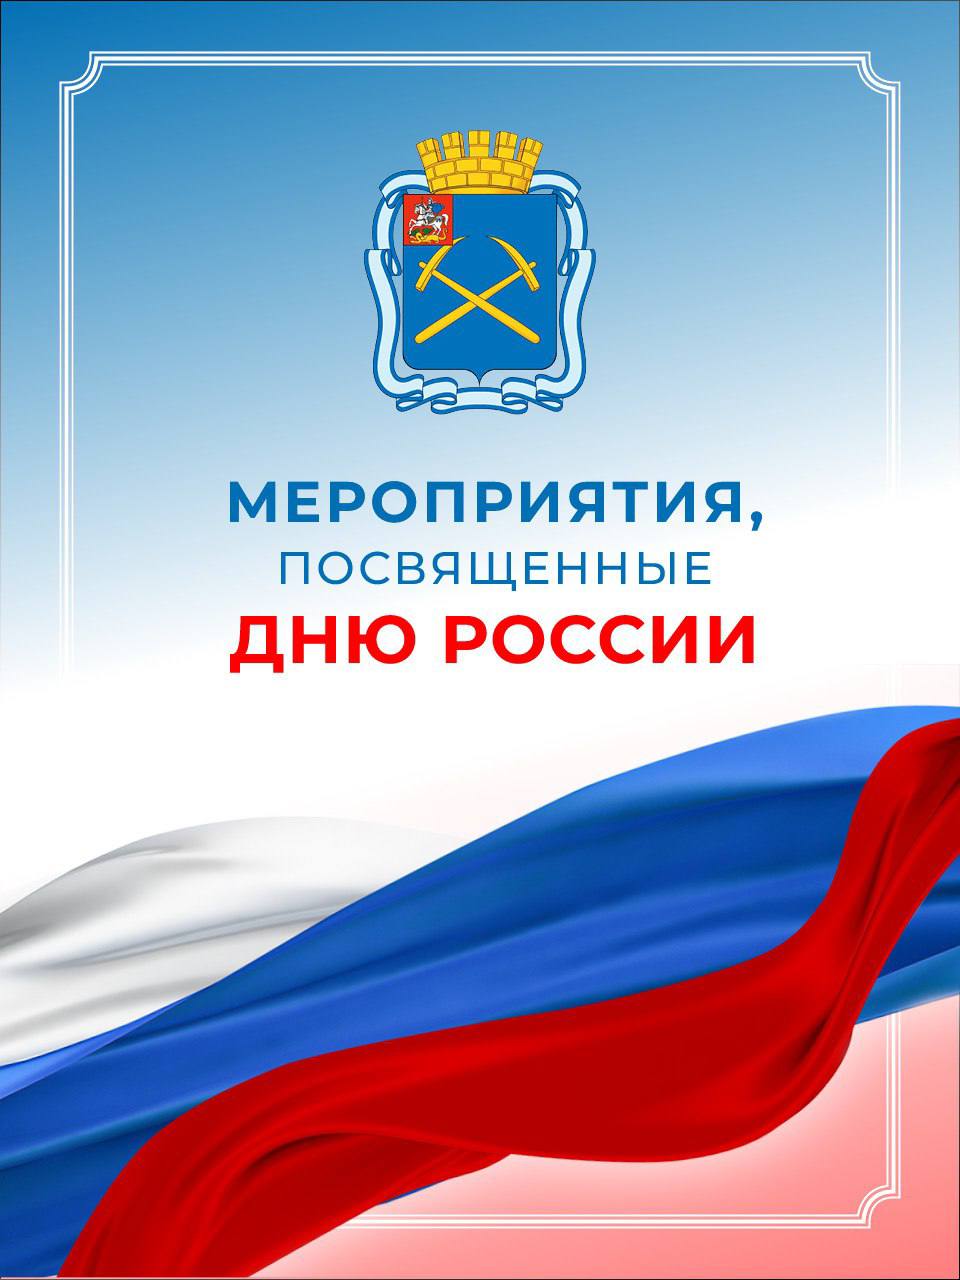 Завтра Подольск вместе со всей страной отметит День России